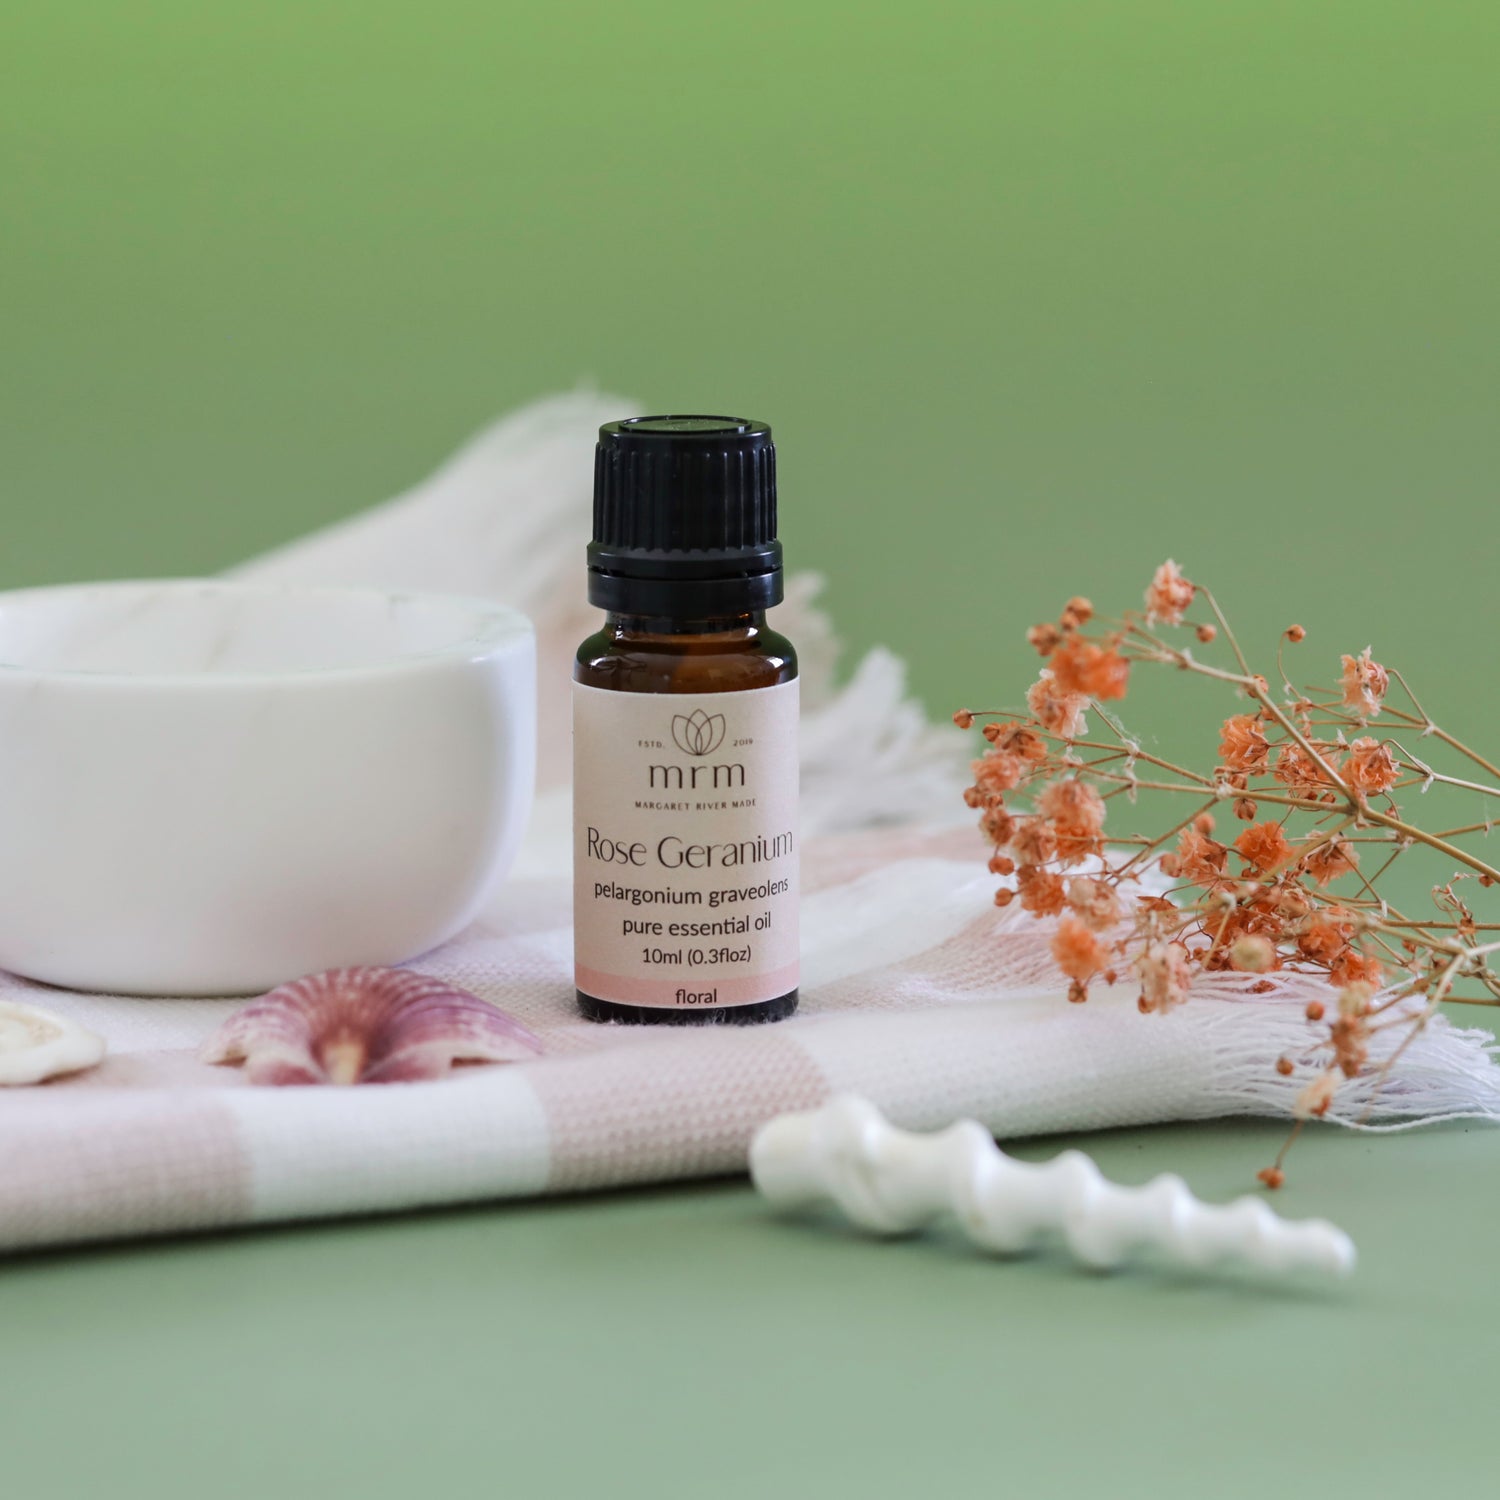 Rose Geranium essential oil